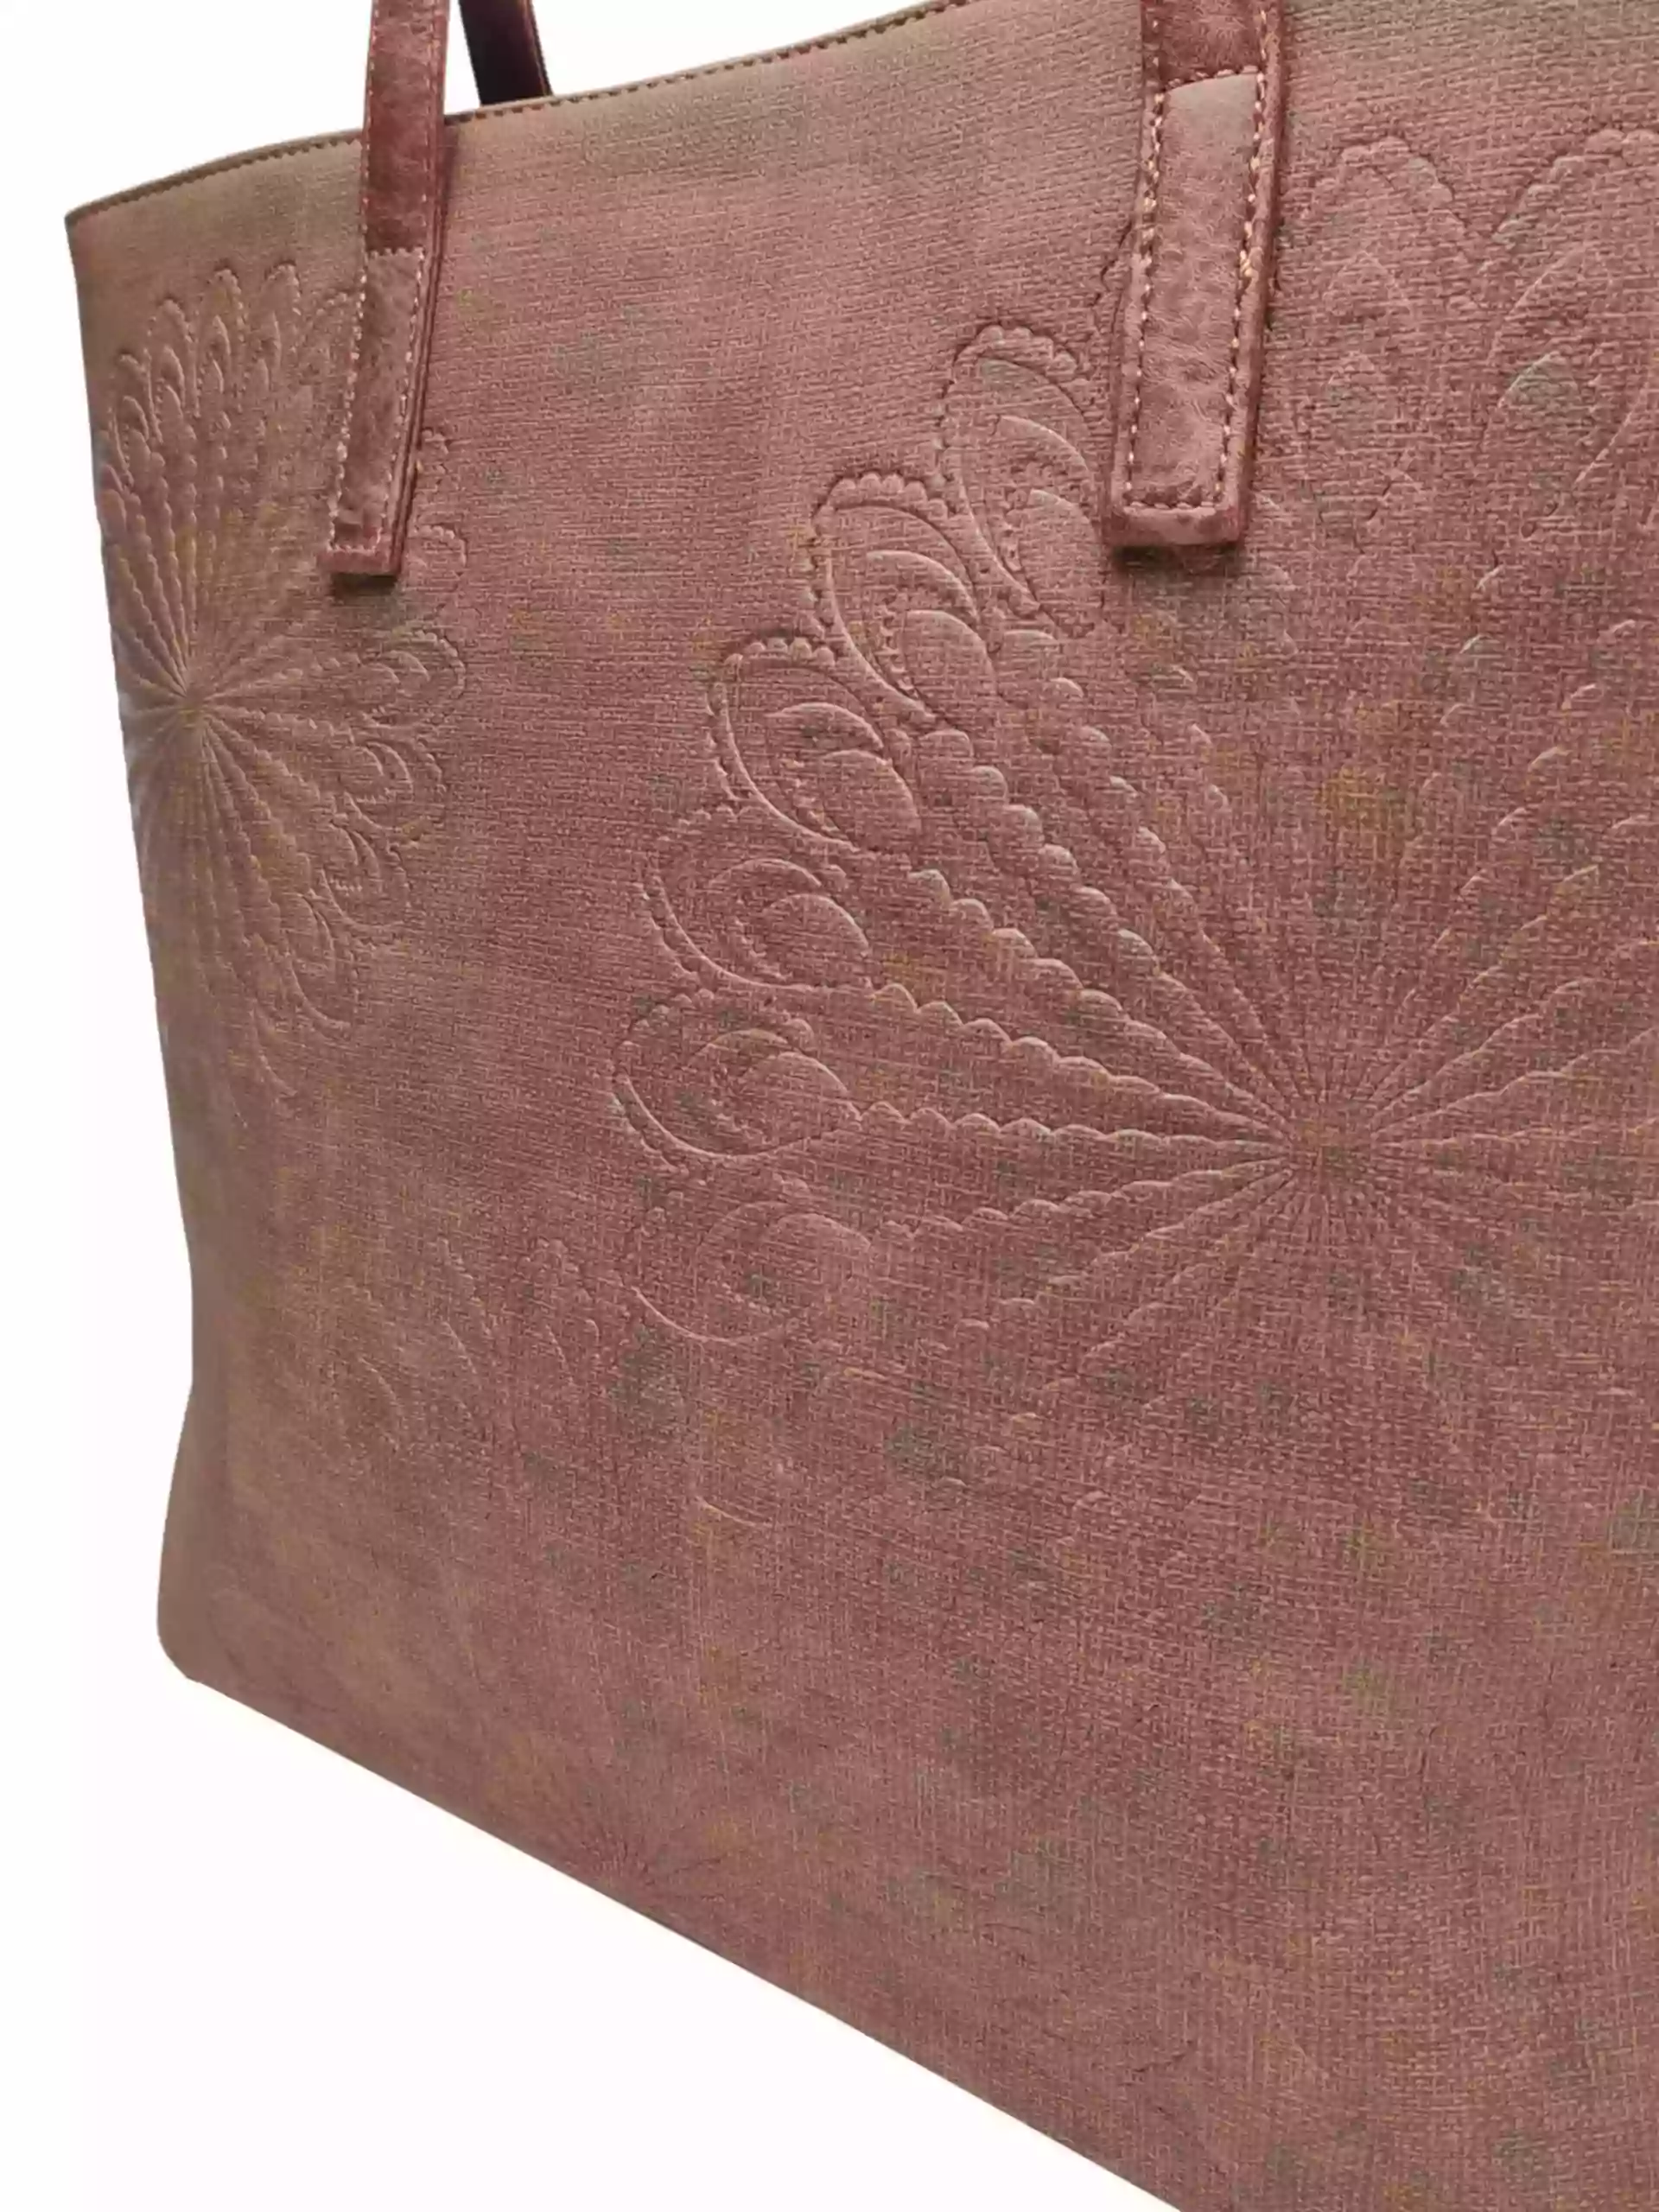 Středně hnědá dámská kabelka přes rameno s texturou, Tapple, H17409, detail přední strany kabelky přes rameno